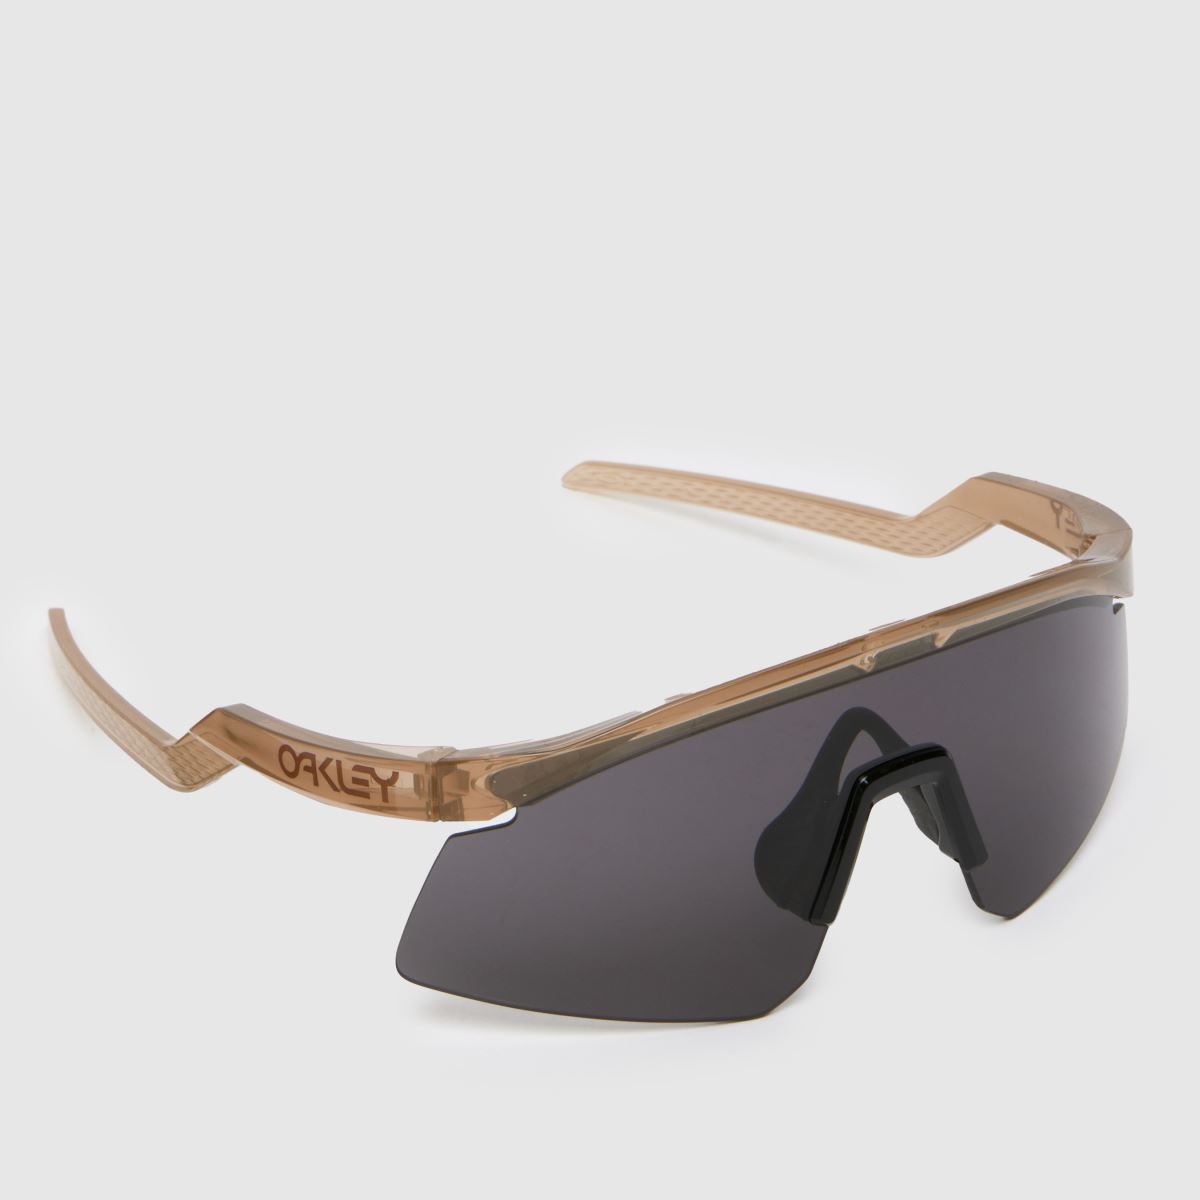 Oakley brown hydra sunglasses